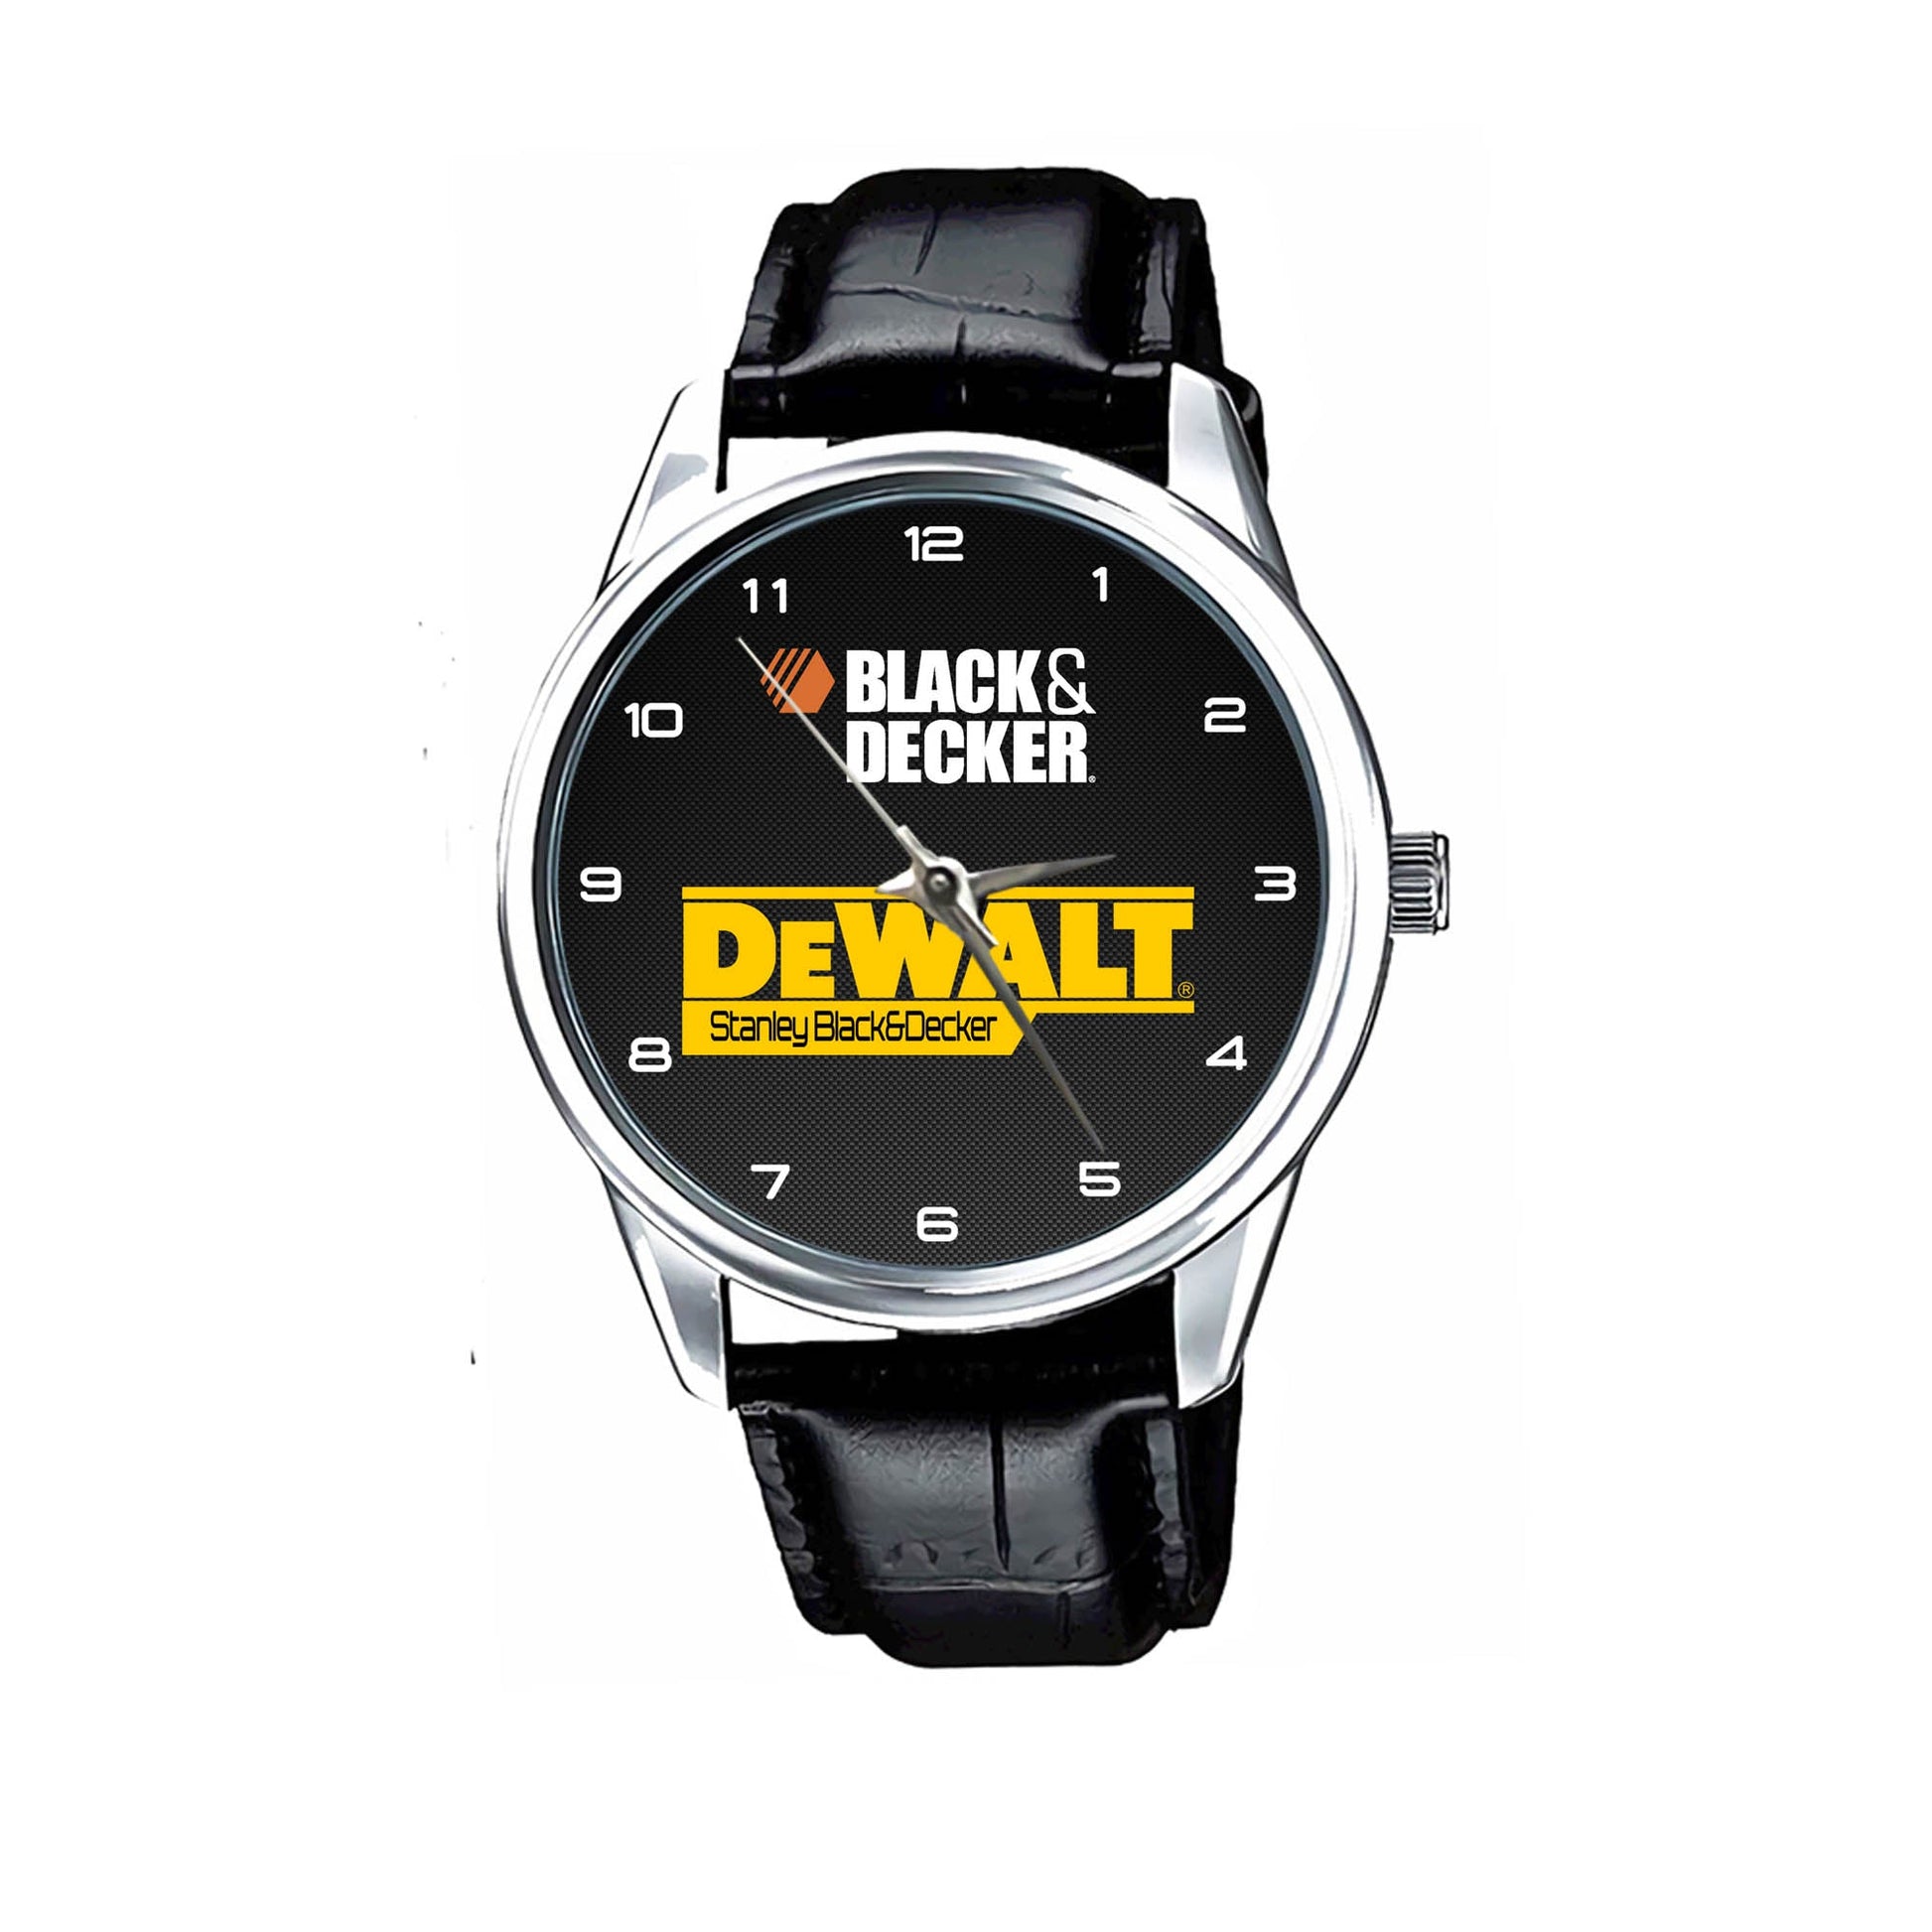 Dewalt Stanley Black & Decker Watches KP802